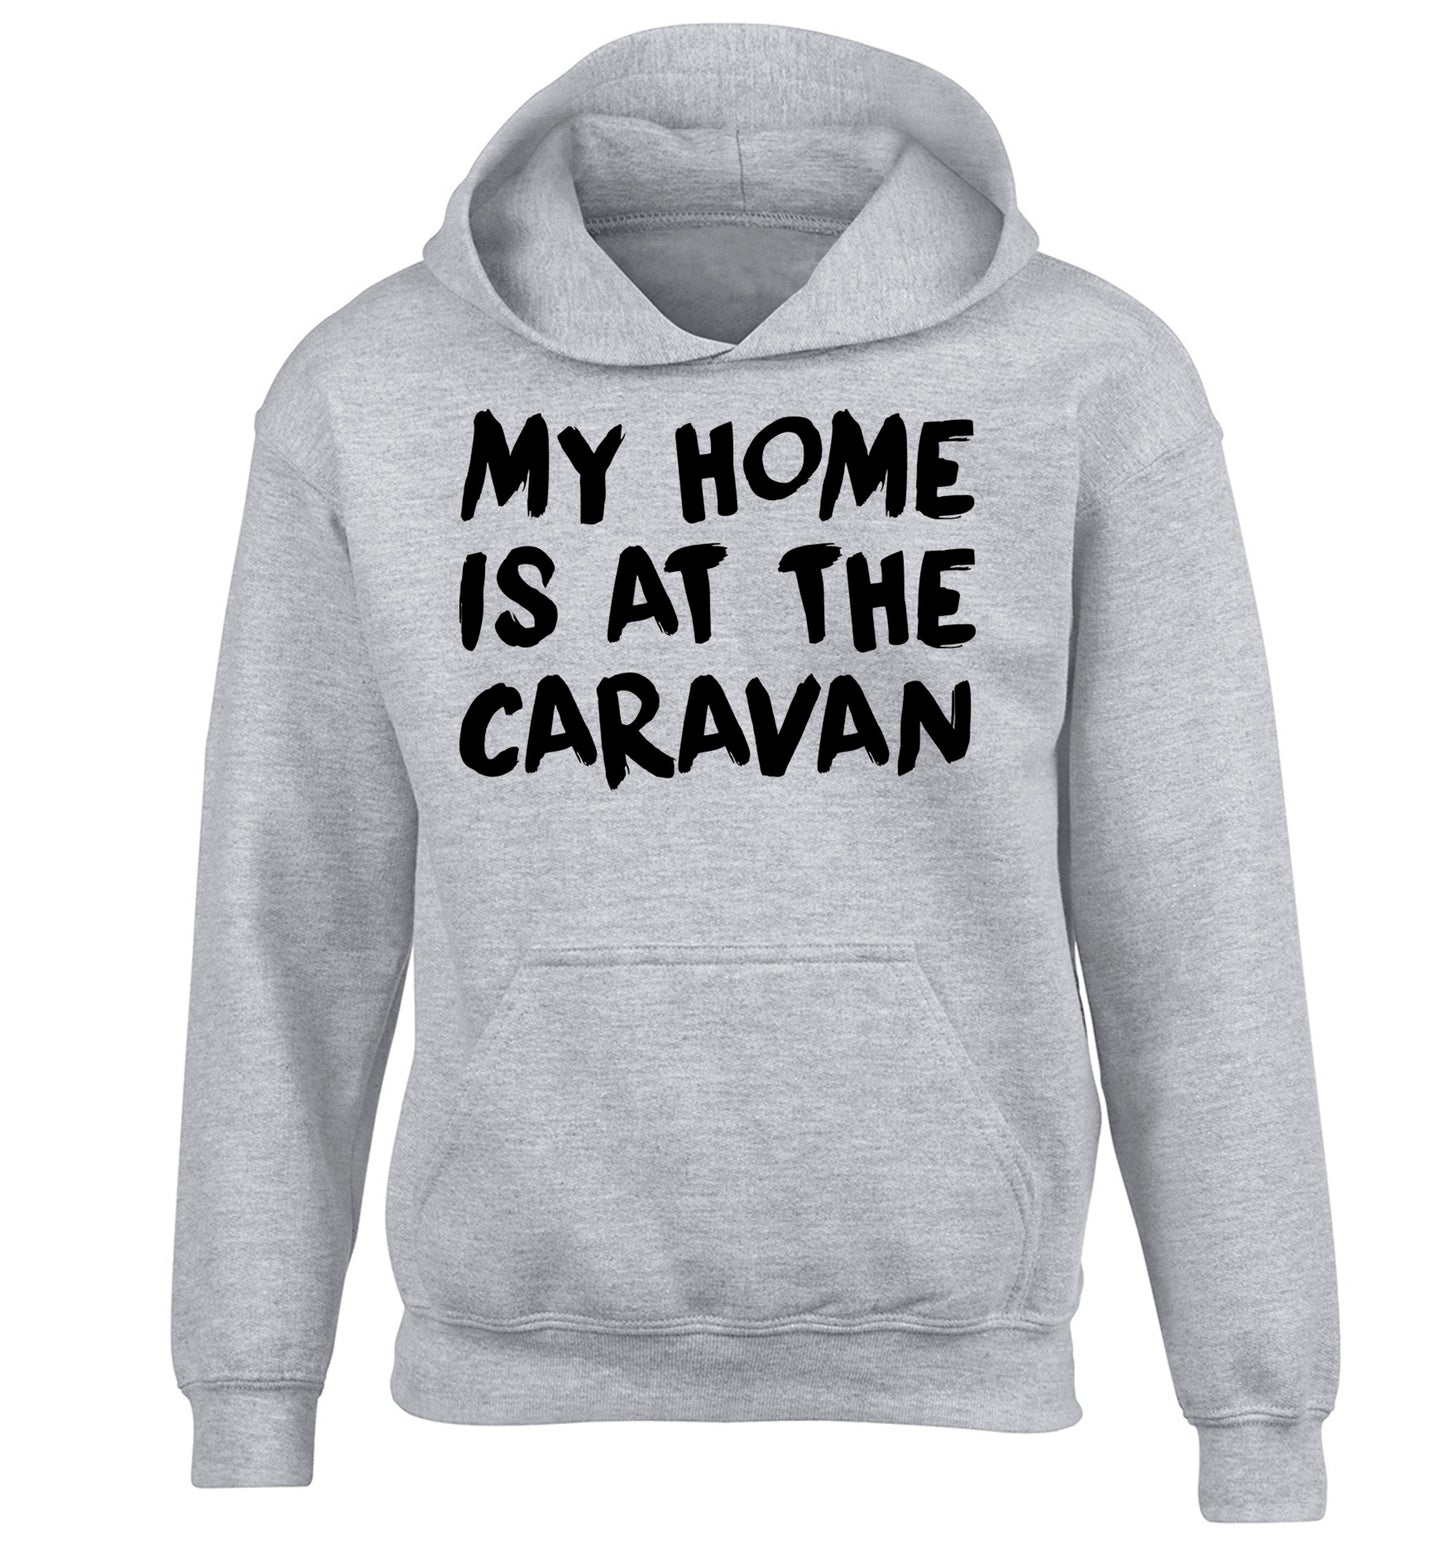 My home is at the caravan children's grey hoodie 12-14 Years